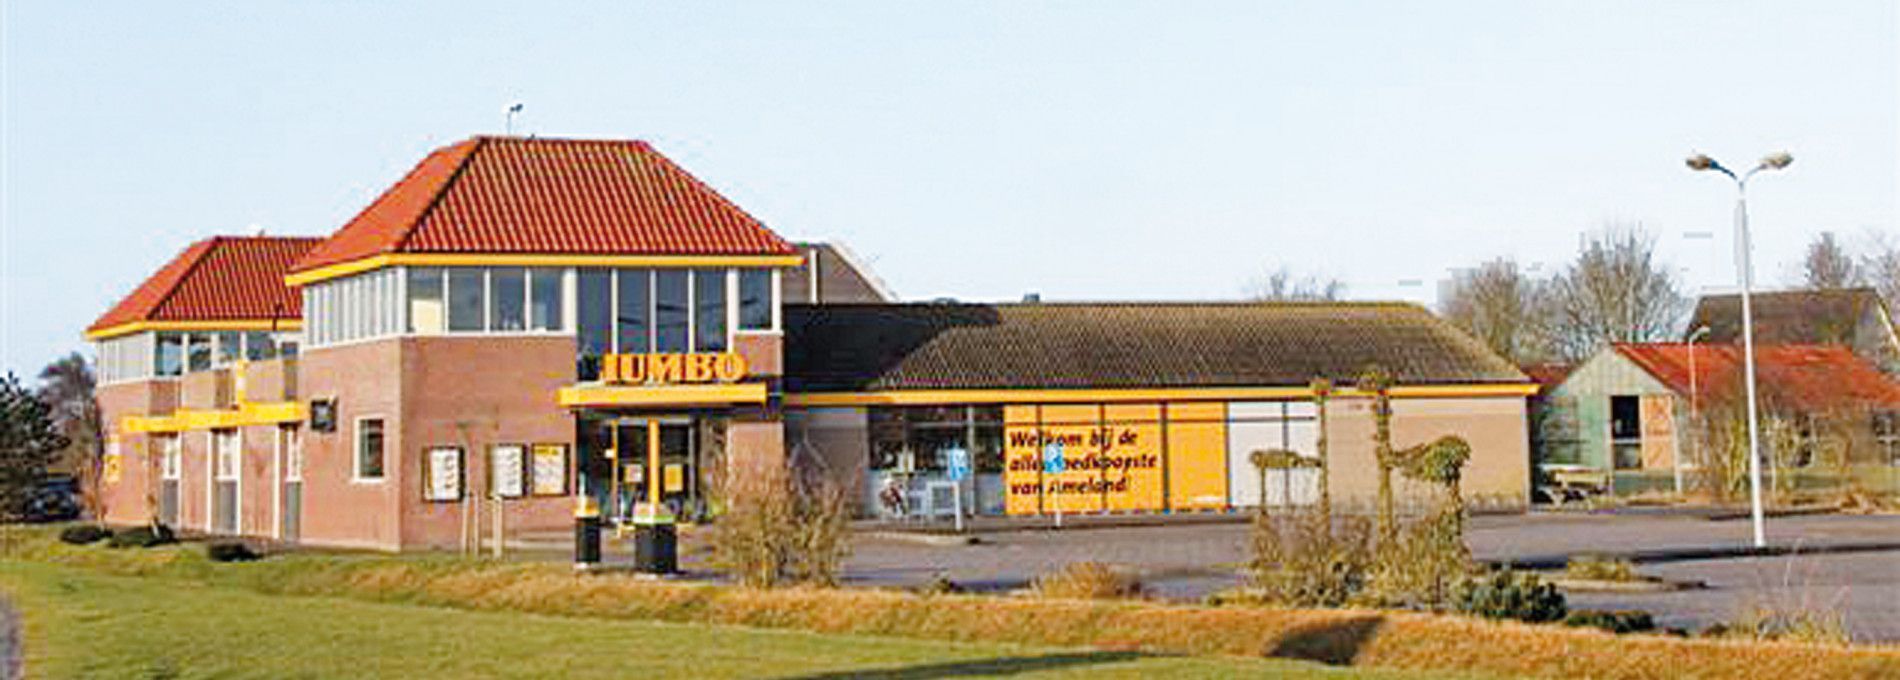 Jumbo supermarkt - VVV Ameland